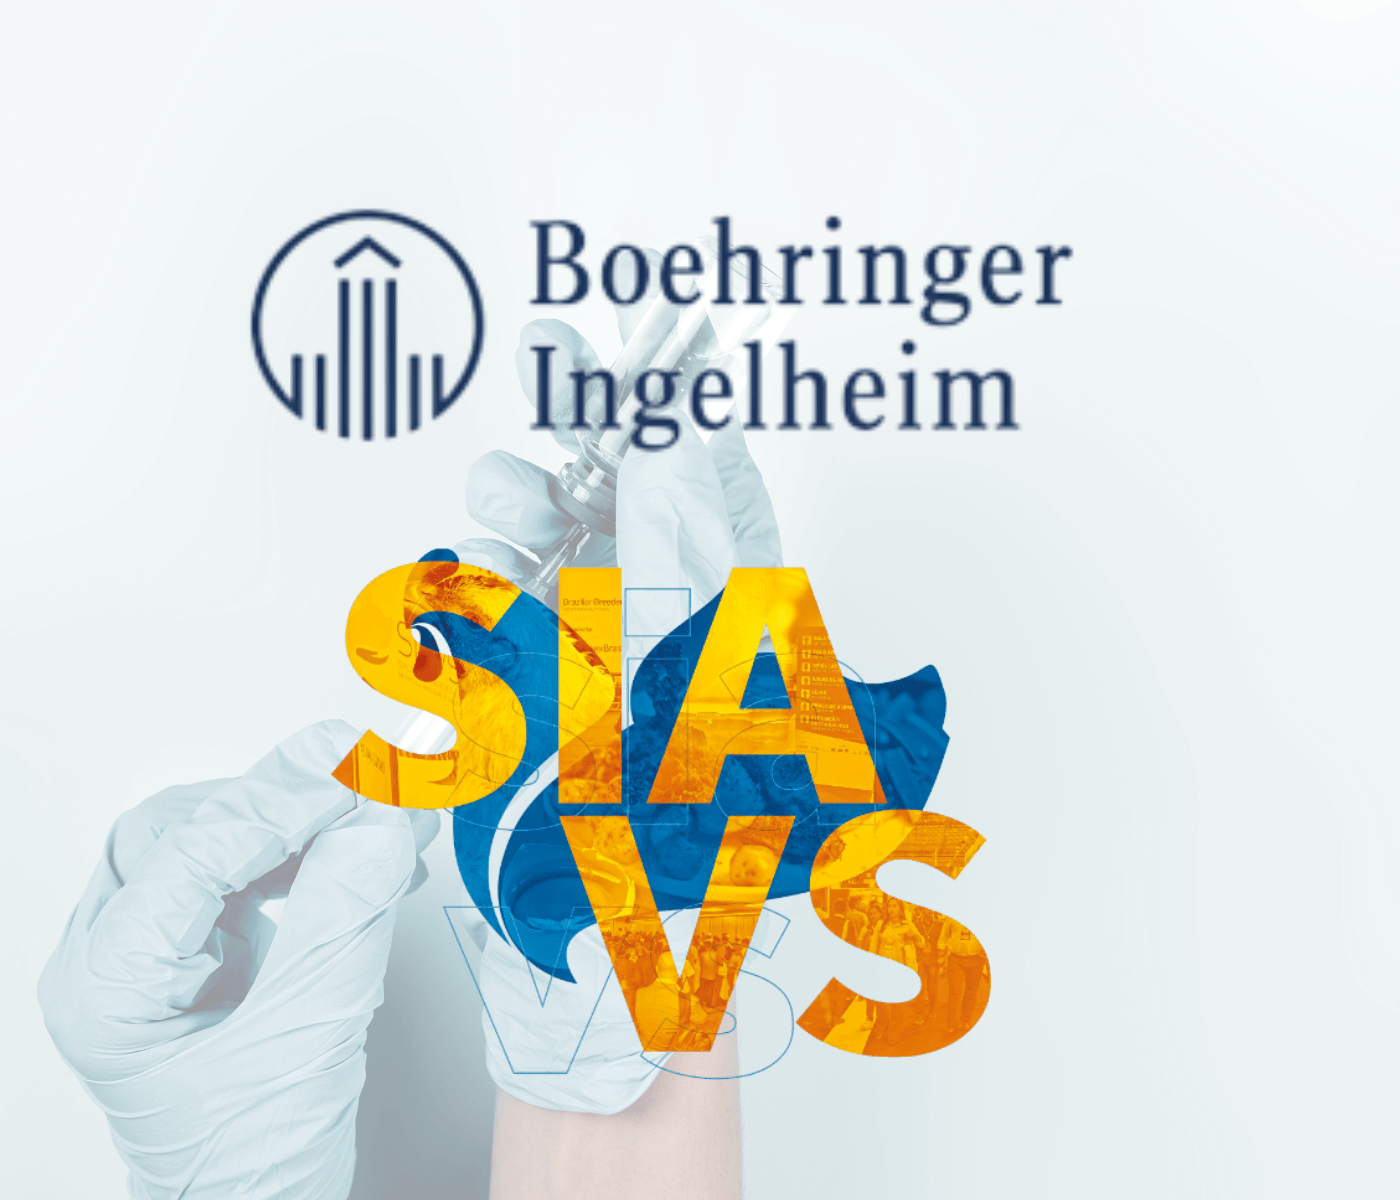 Boehringer Ingelheim confirma presença no SIAVS 2022 com estande e lançamentos para as áreas de aves e suínos